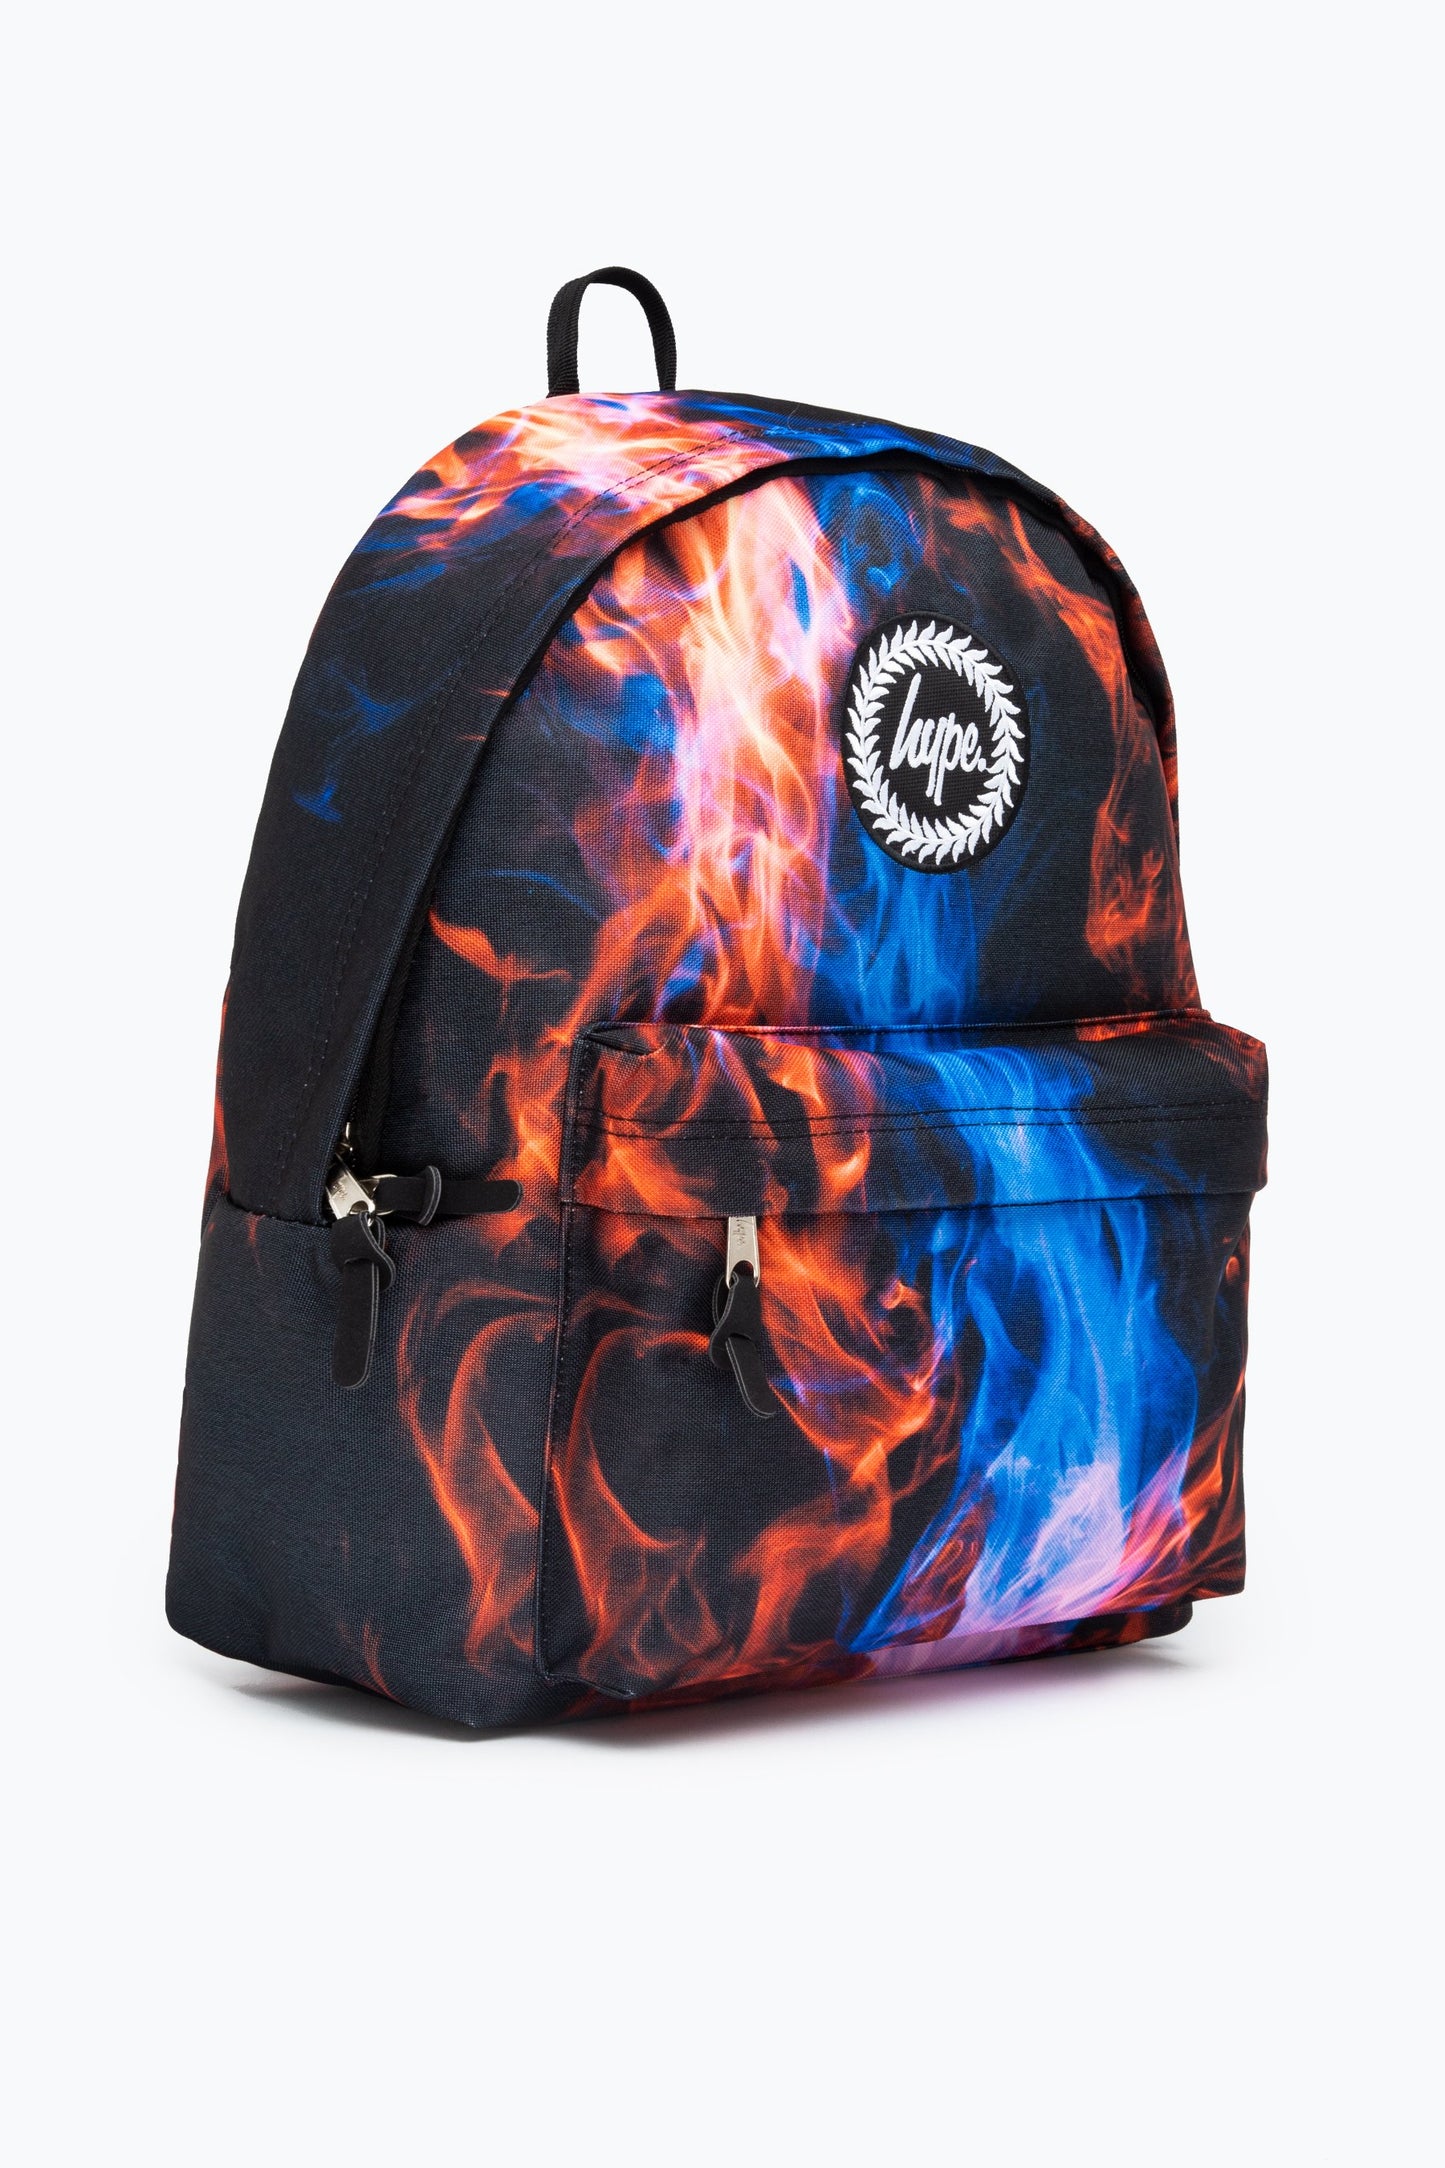 Hype Cyan Fire Backpack